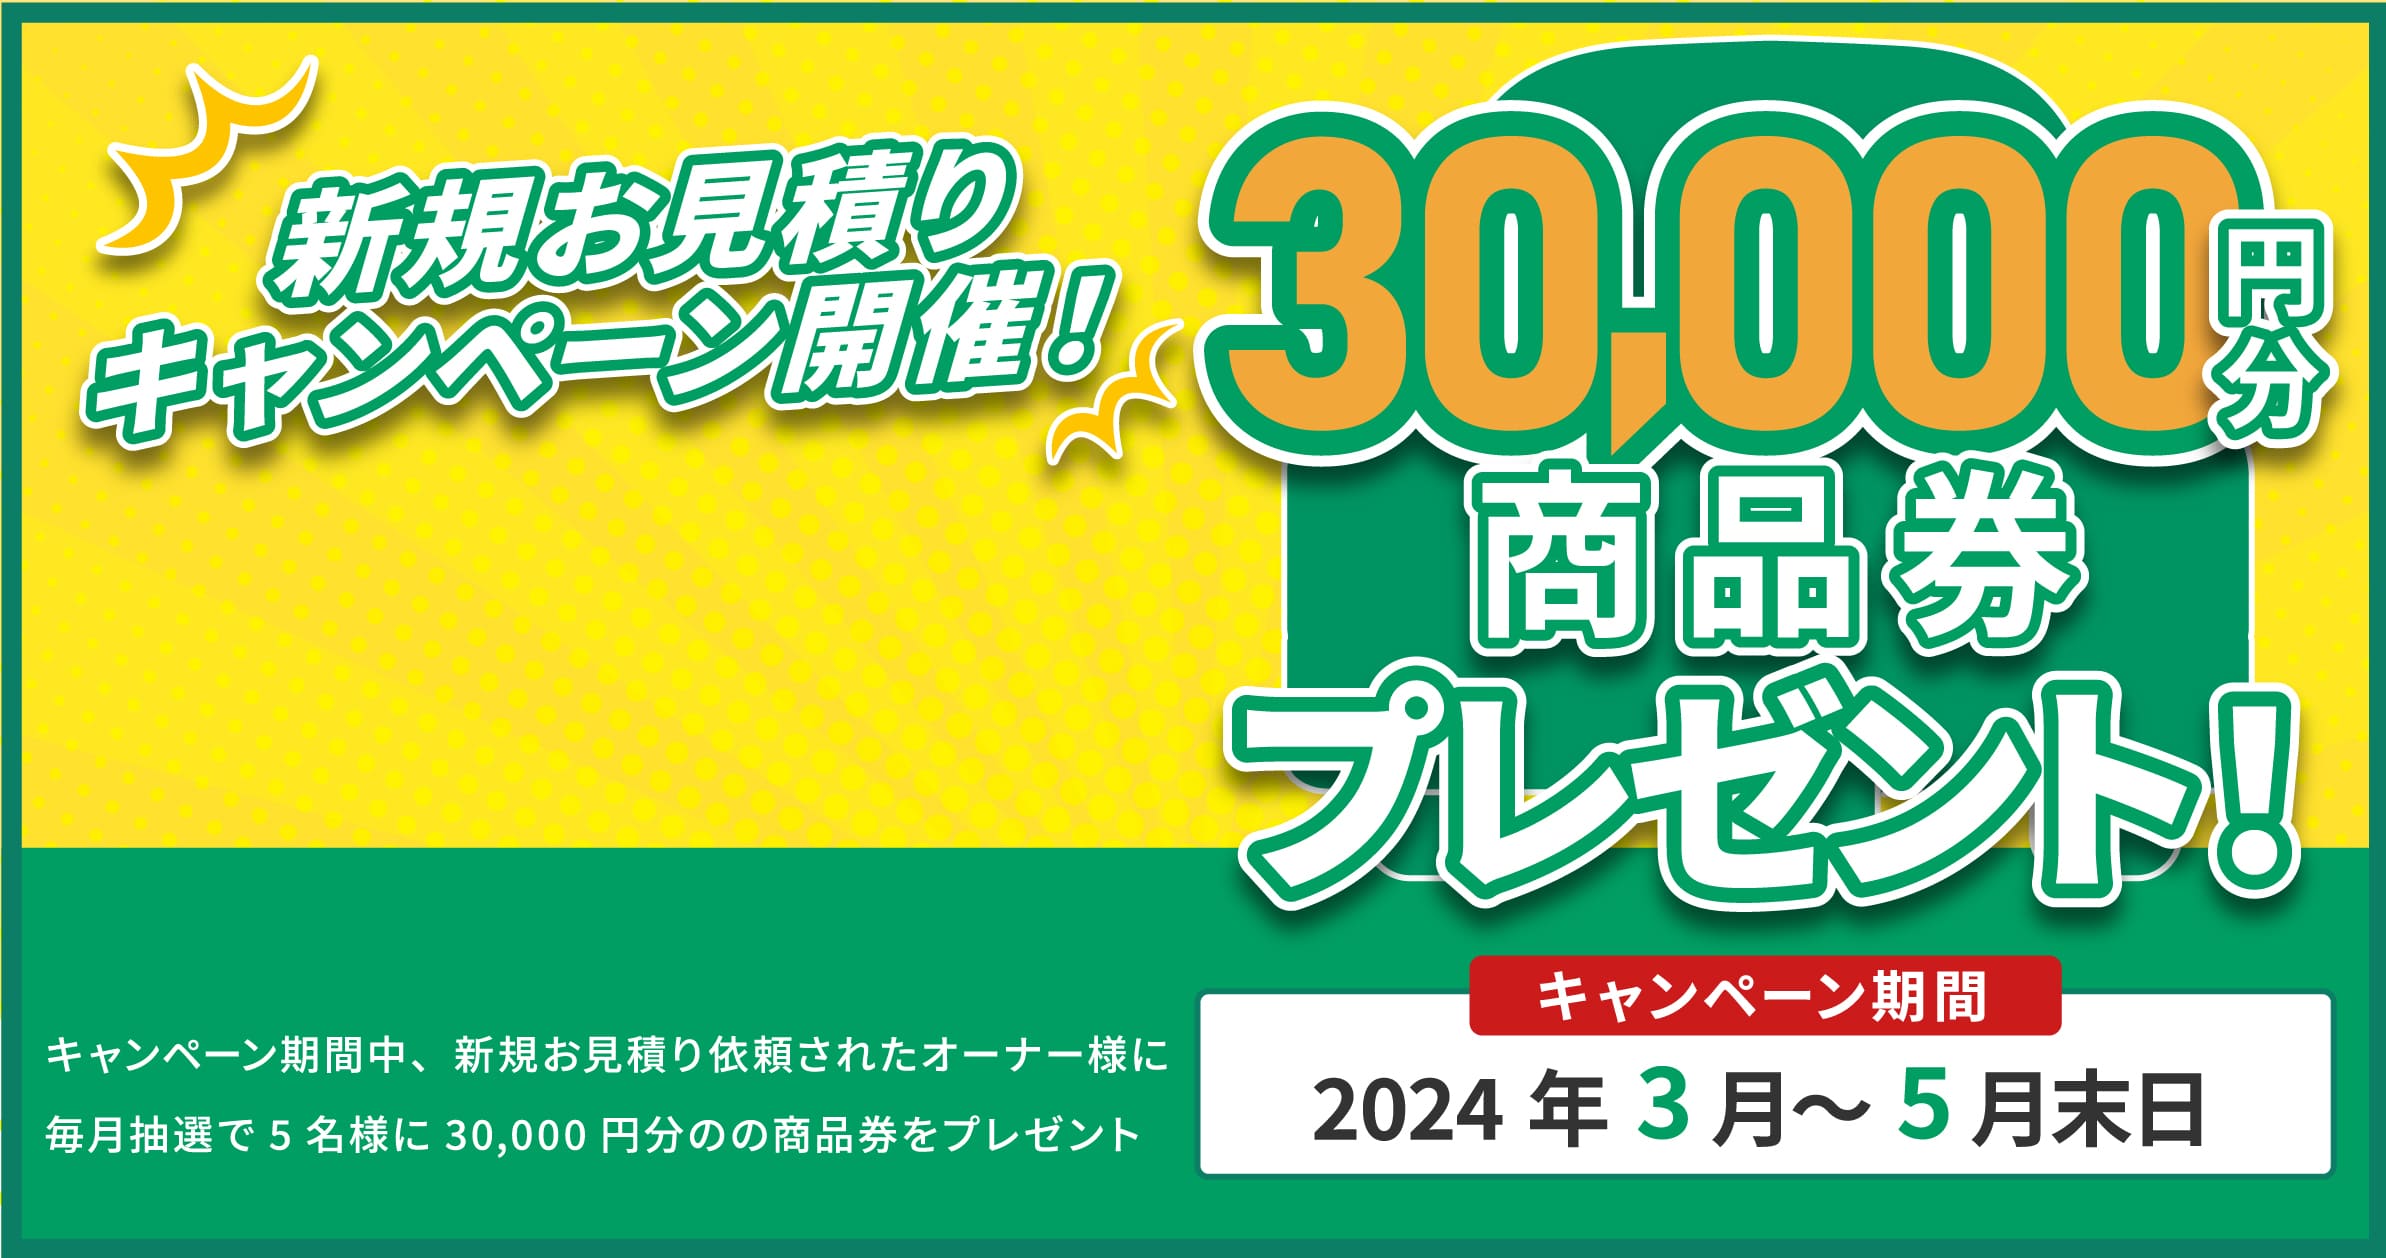 新規お見積りキャンペーン開催！3,900円分VISAギフトカードプレゼント！